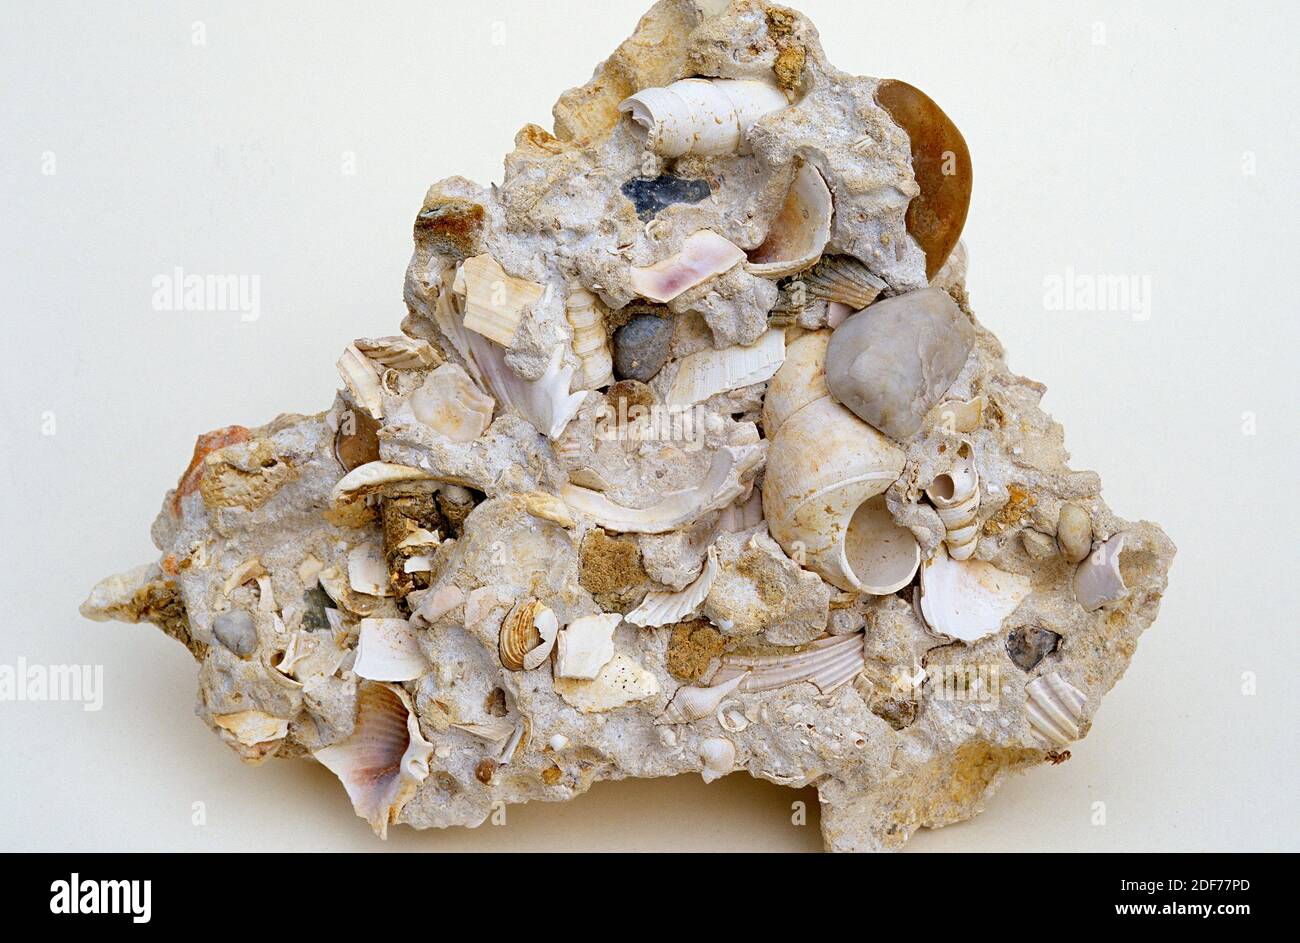 La piedra caliza de Shelly es una roca sedimentaria compuesta por restos de esqueleto de animales marinos. Muestra. Foto de stock